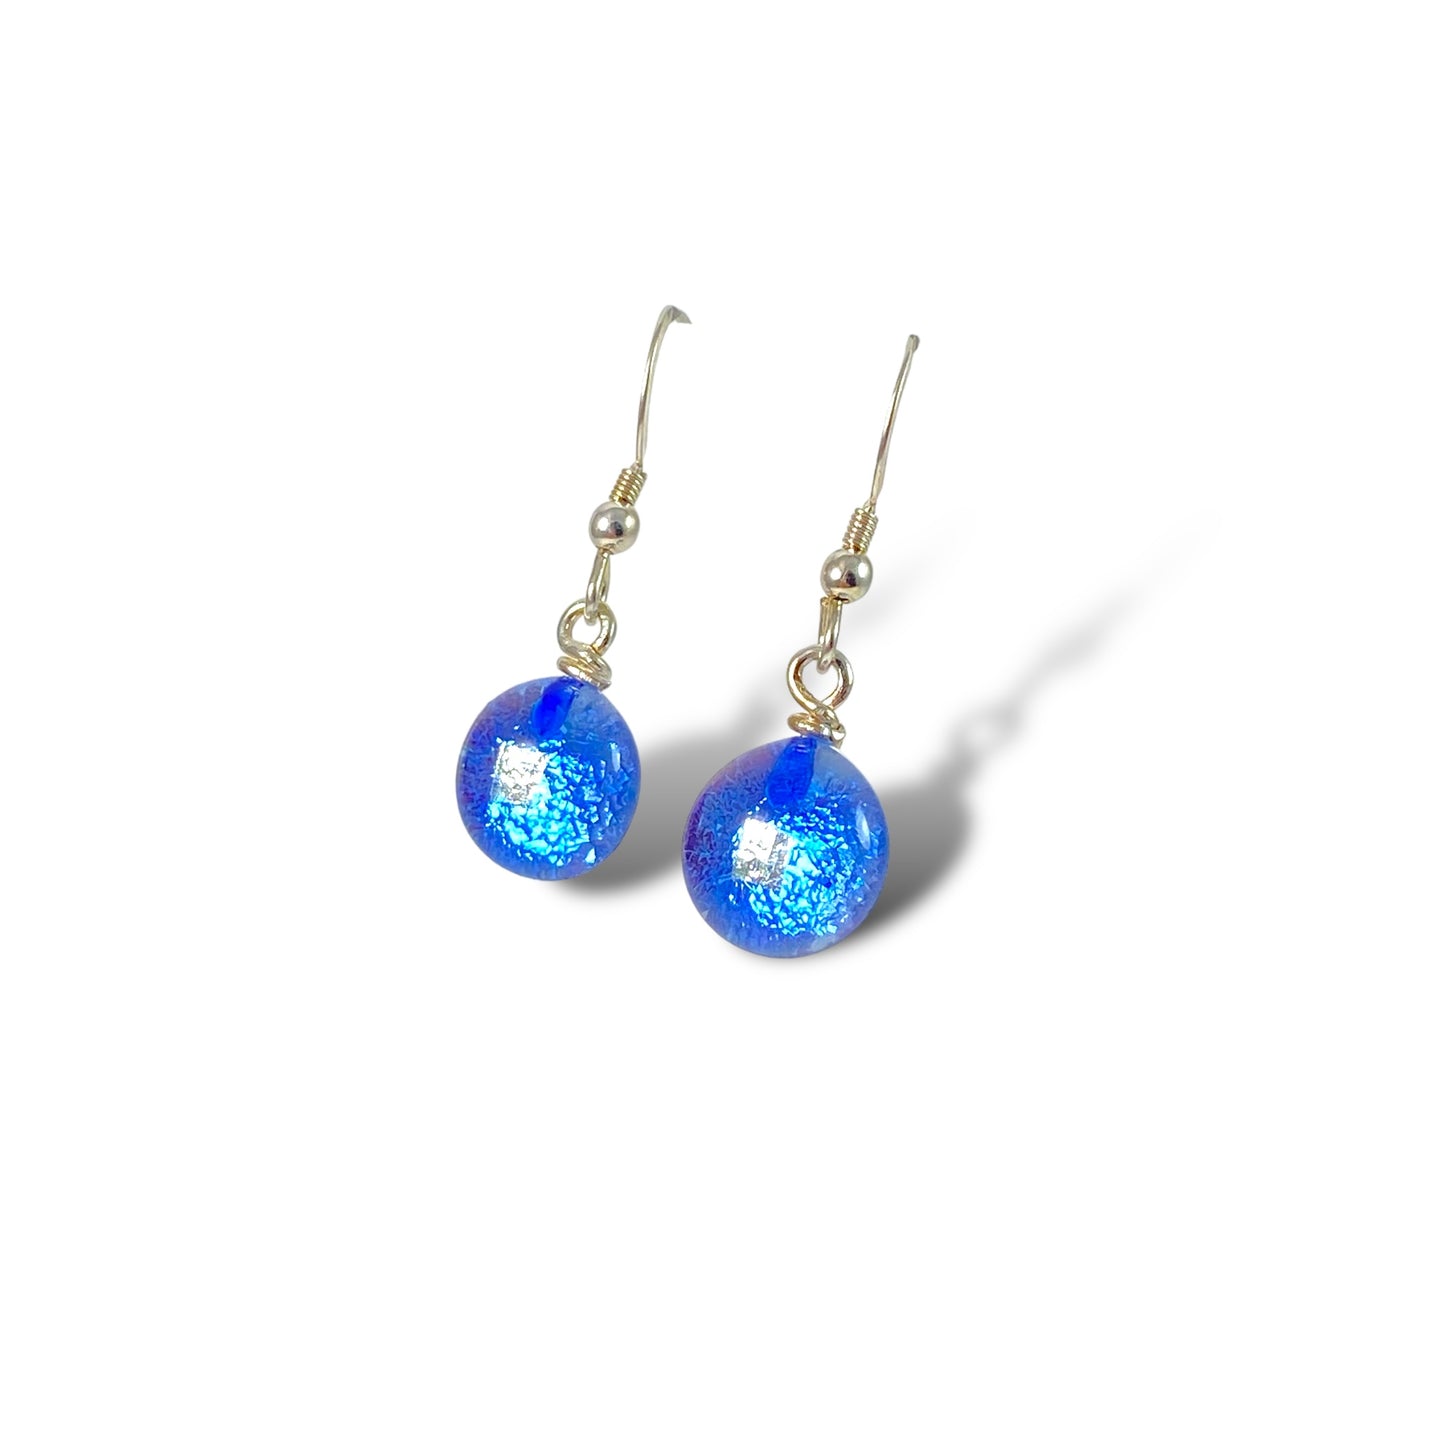 Space Ball Earrings in Sapphire Blue